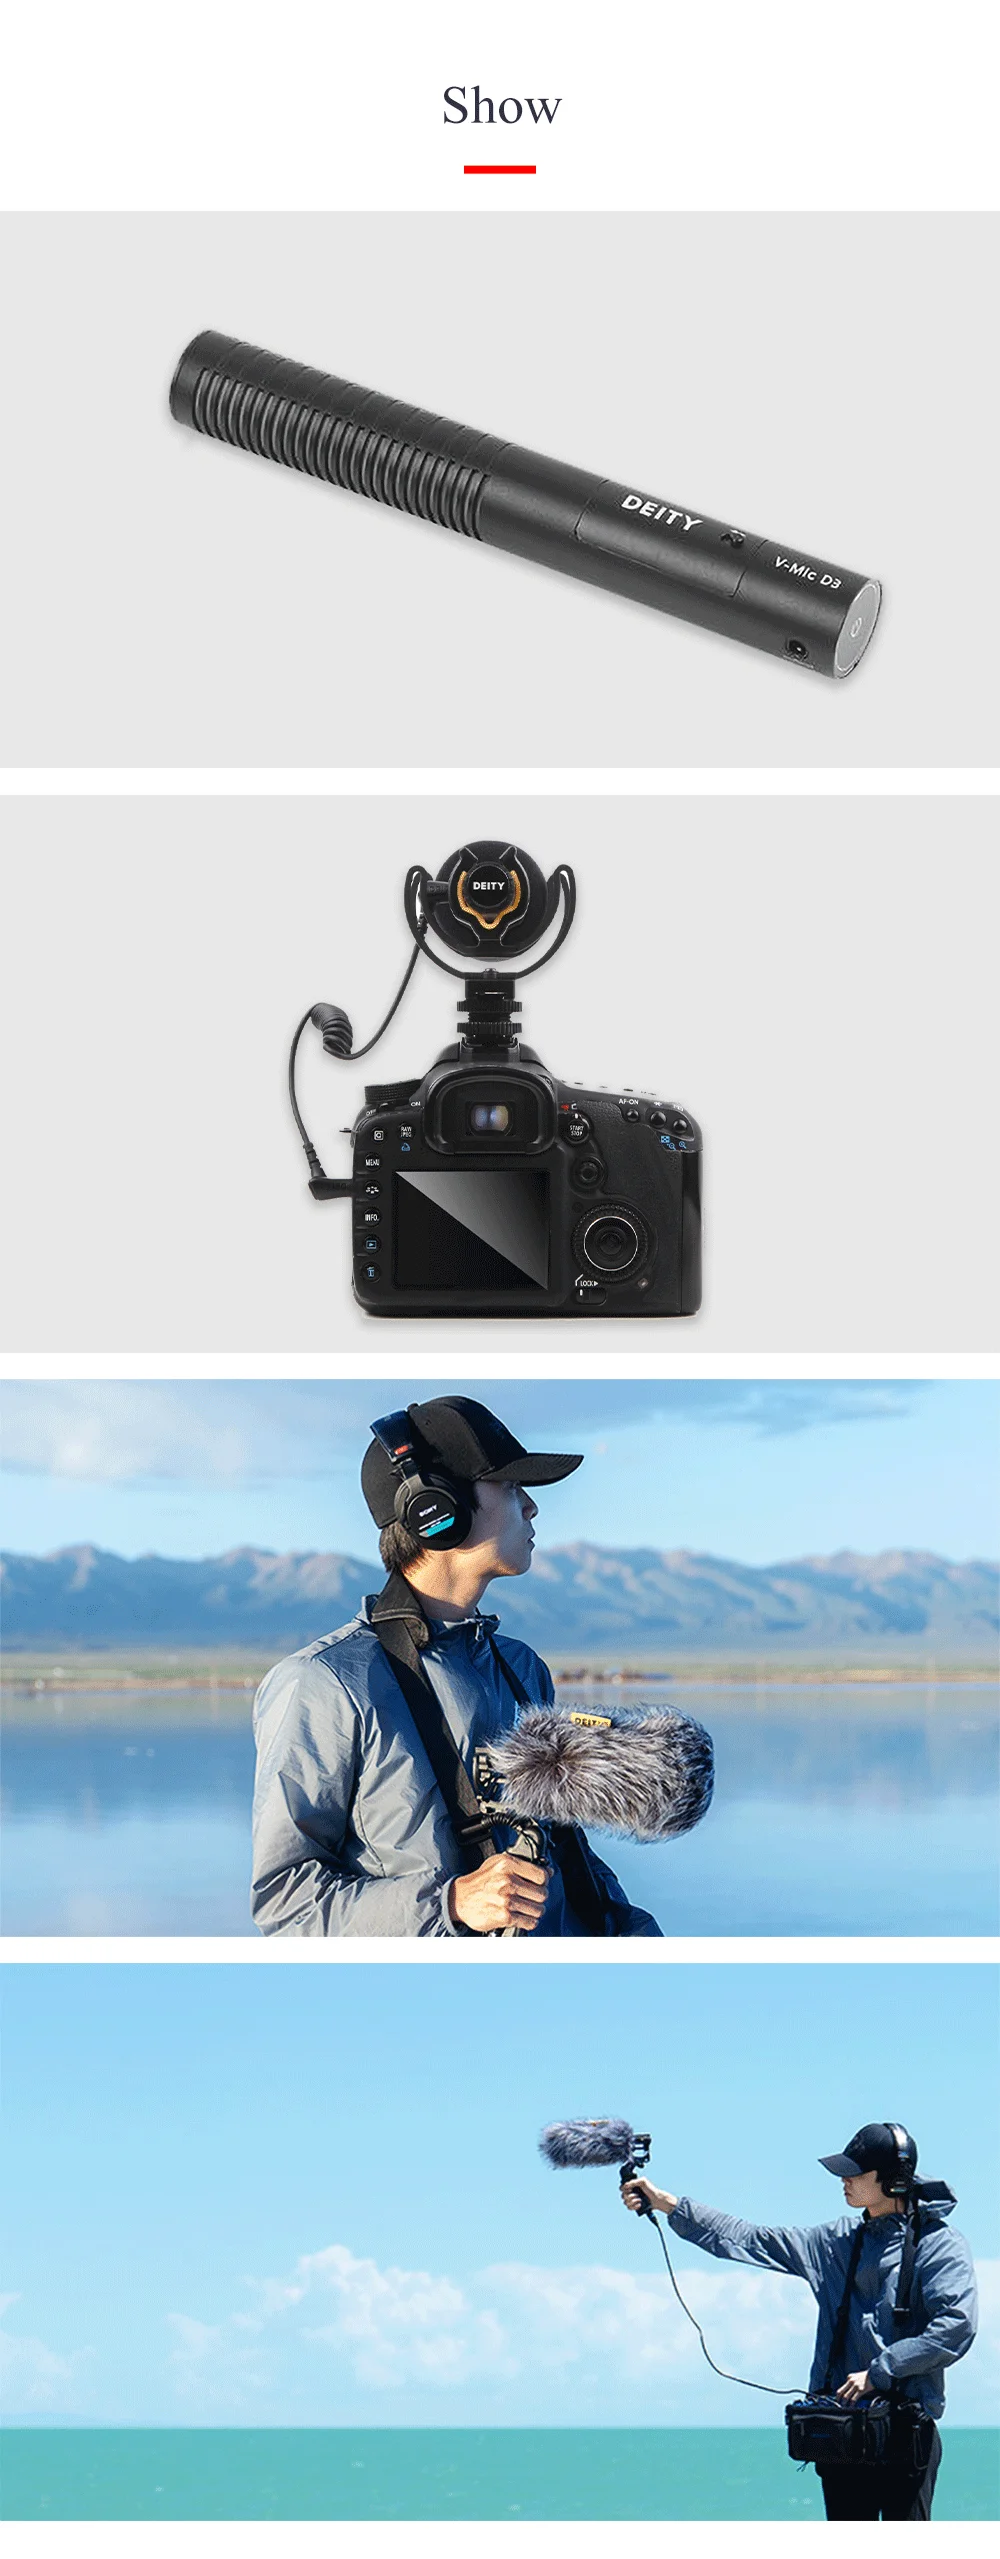 Универсальный микрофон превосходный звук по оси низкий уровень шума искажения микрофон для DSLR SLR камера видеокамера рекордер телефон ноутбук планшет